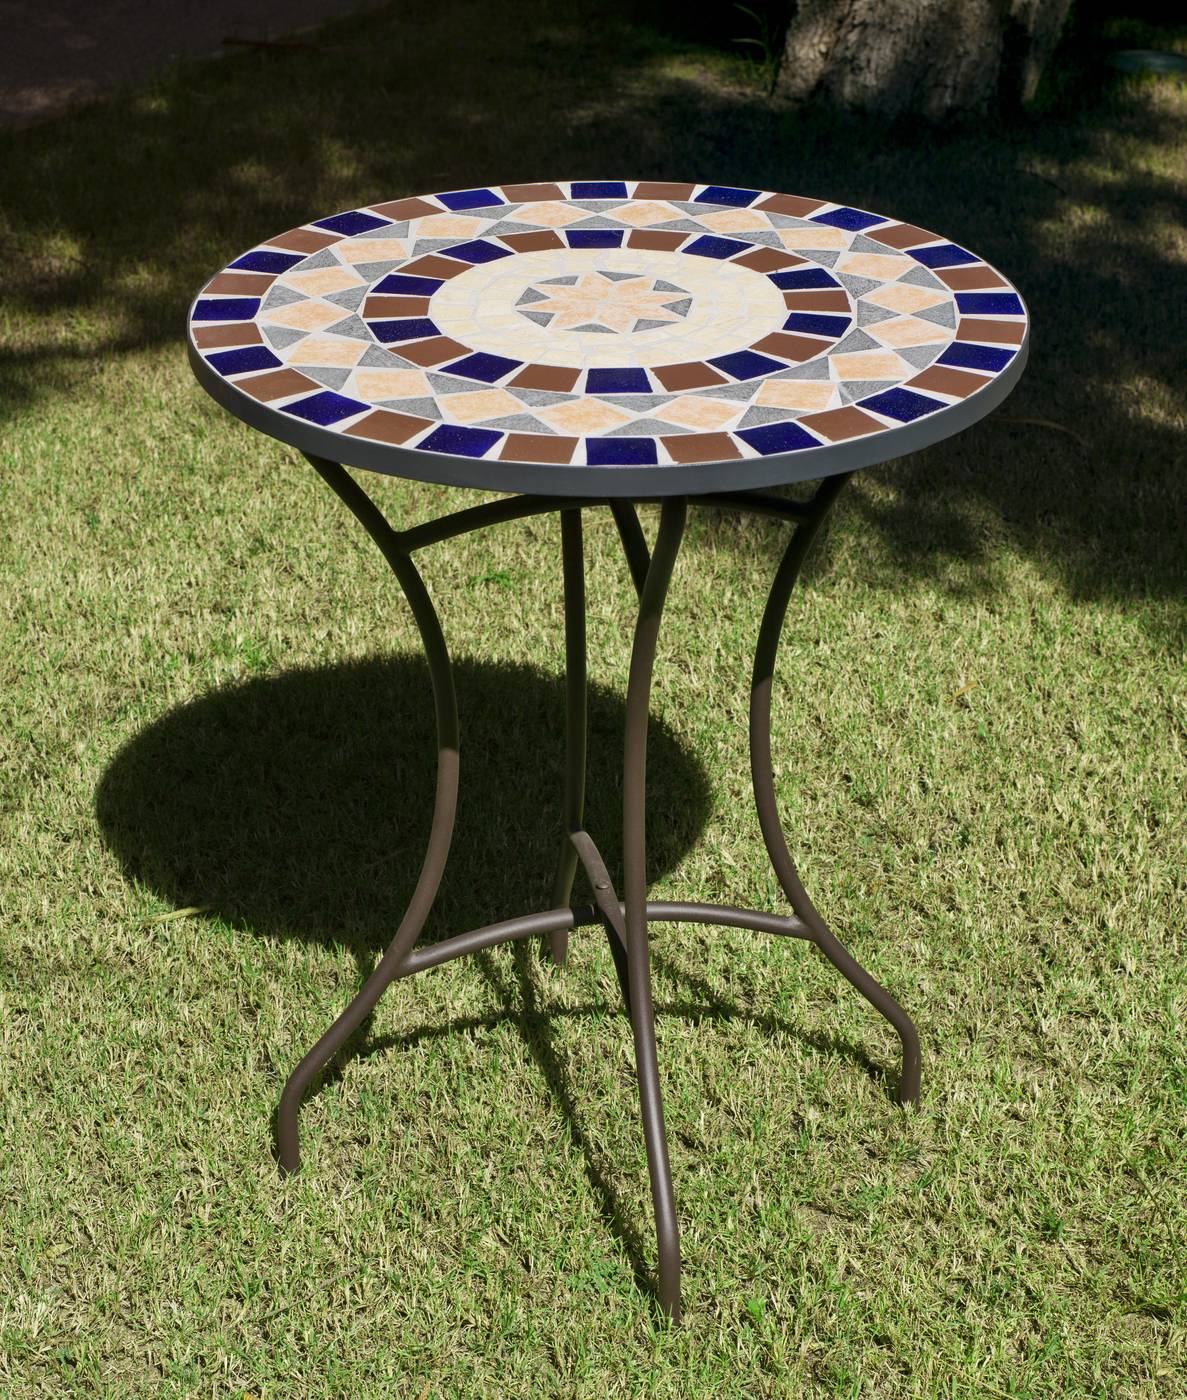 Set Mosaico Graciel-Brasil - Conjunto de acero color bronce: mesa  redonda de acero forjado, con tablero mosaico de 60 cm. + 2 sillones apilables de wicker